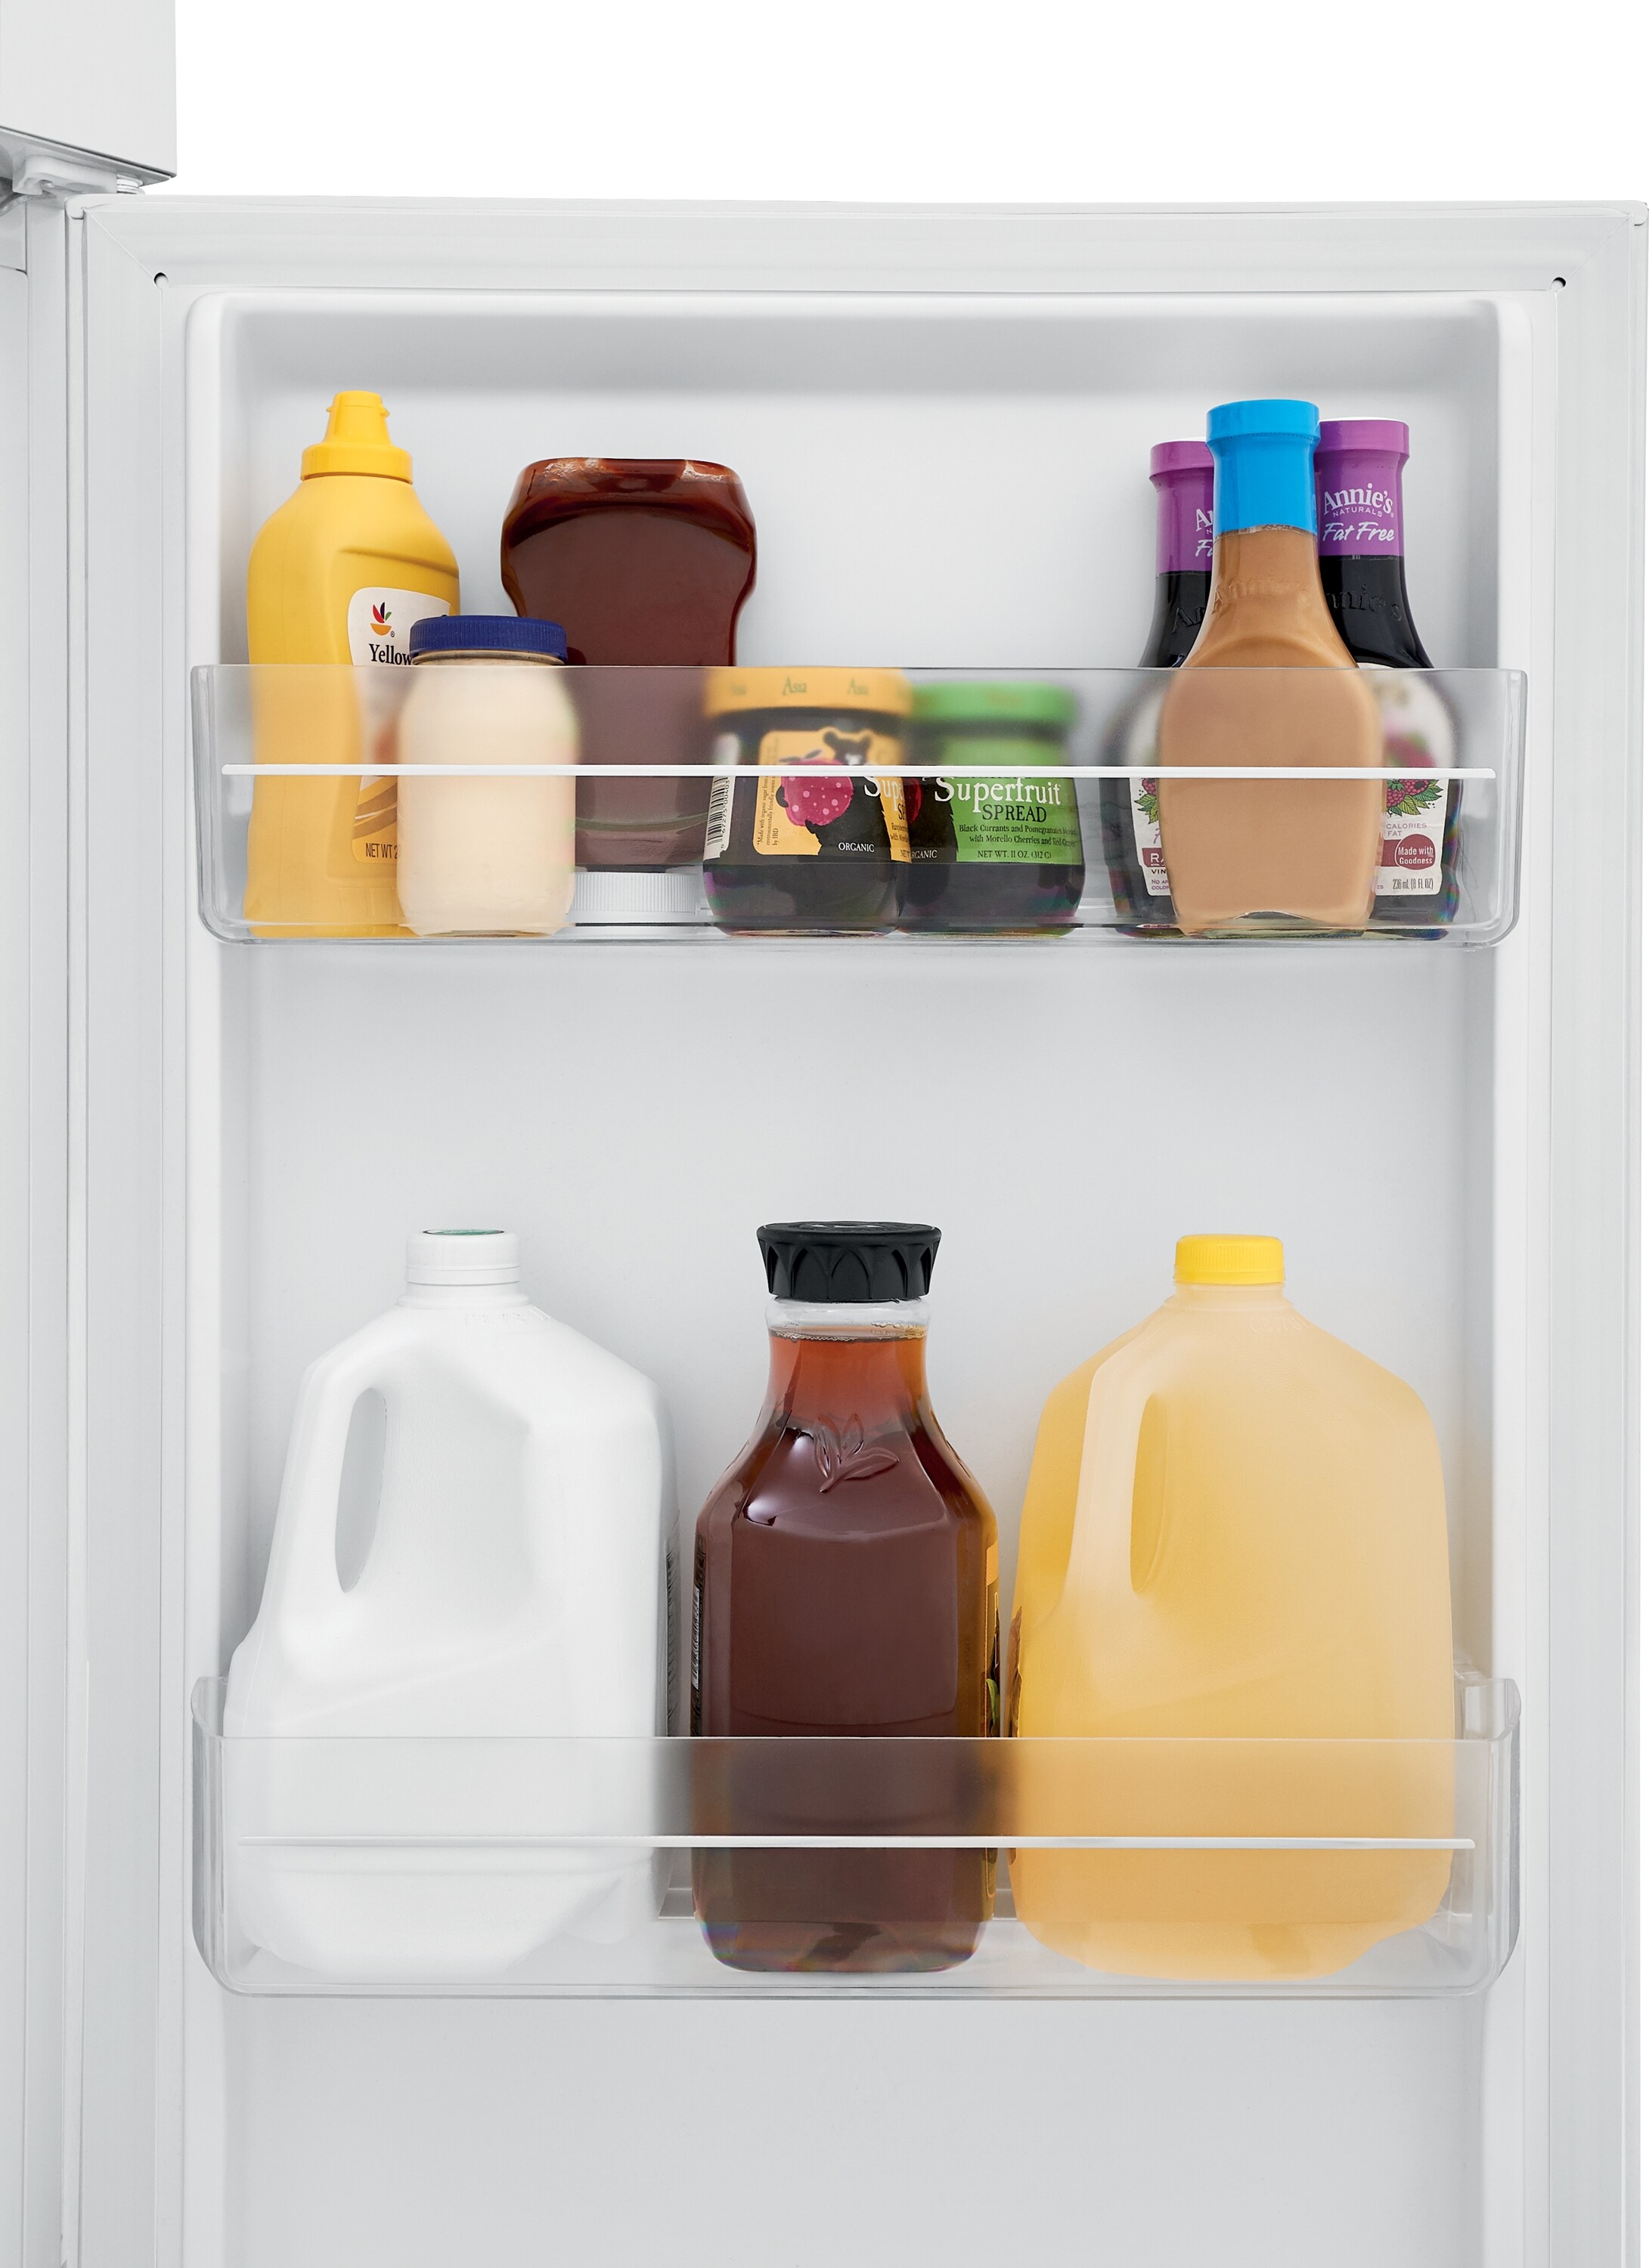 Frigidaire 10 1 Cu Ft Counter Depth Top Freezer Refrigerator White